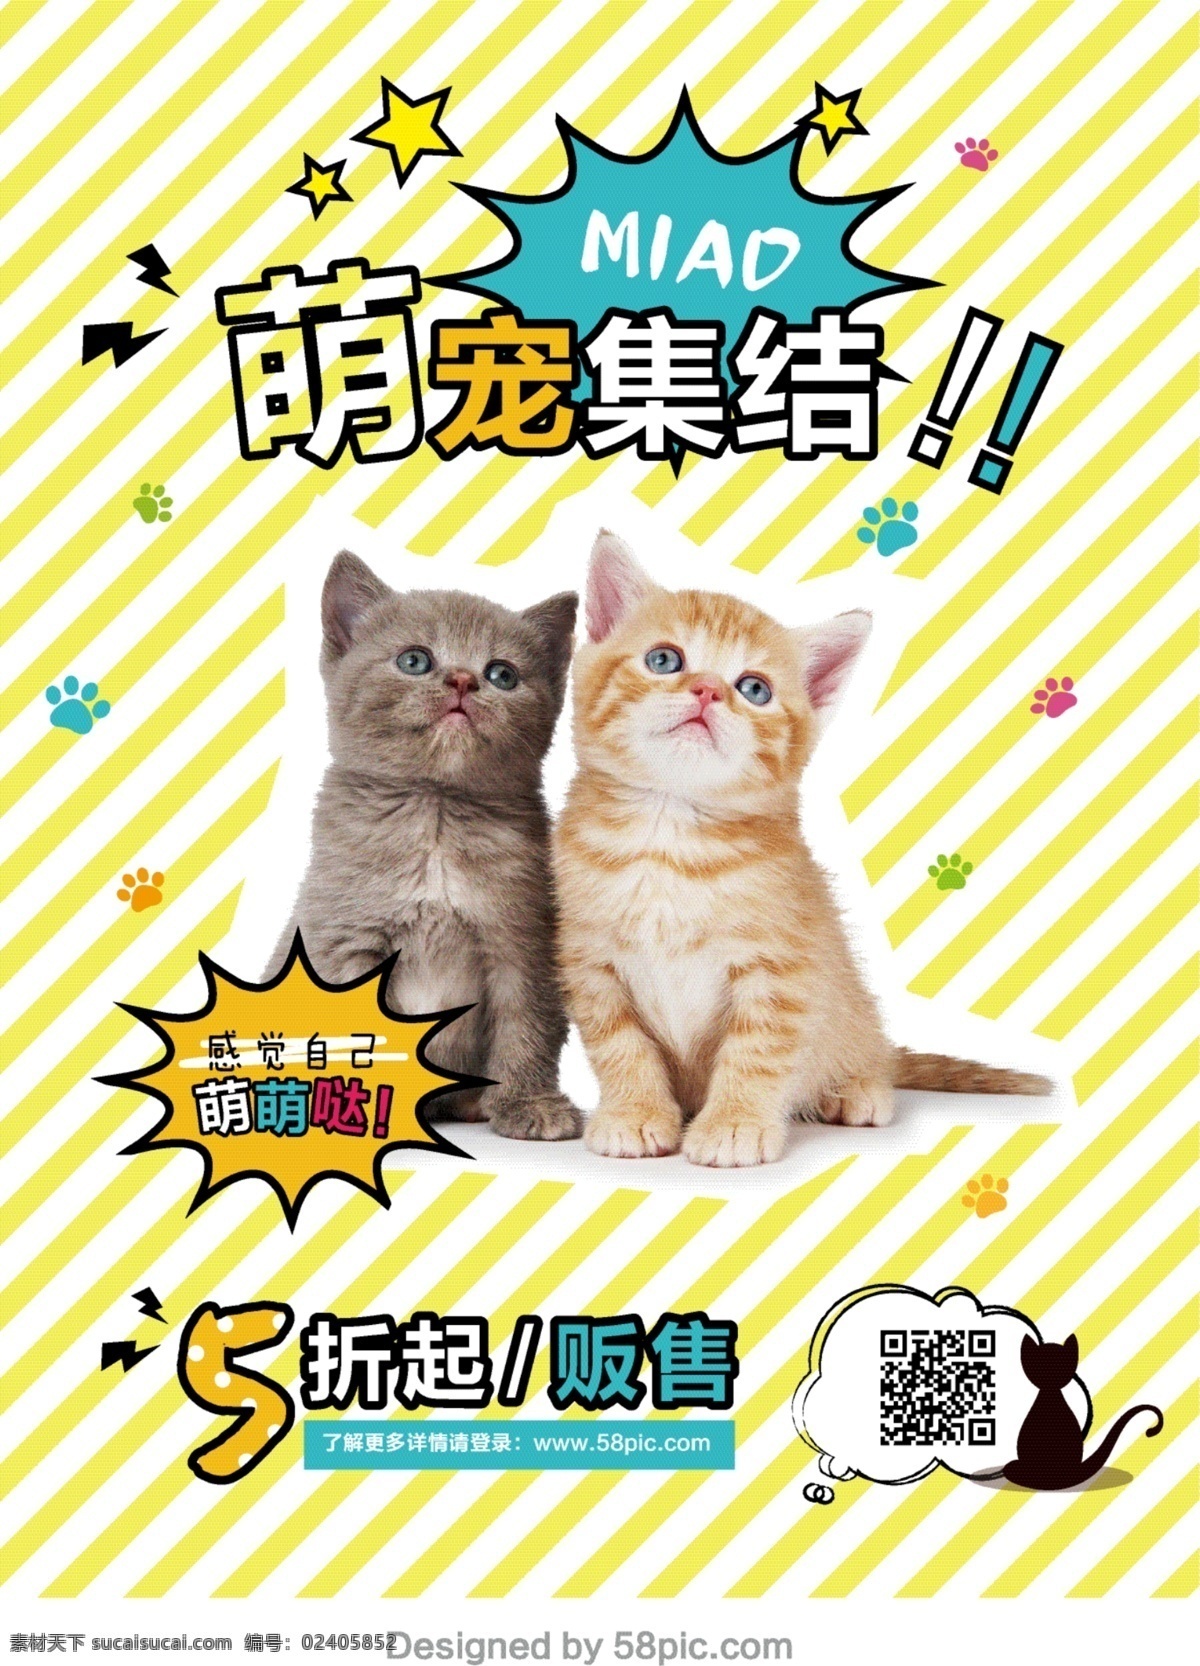 宠物 店 宣传海报 宠物海报 海报 卡通 猫咪 闪电 星星 宠物领养海报 两 只 可爱